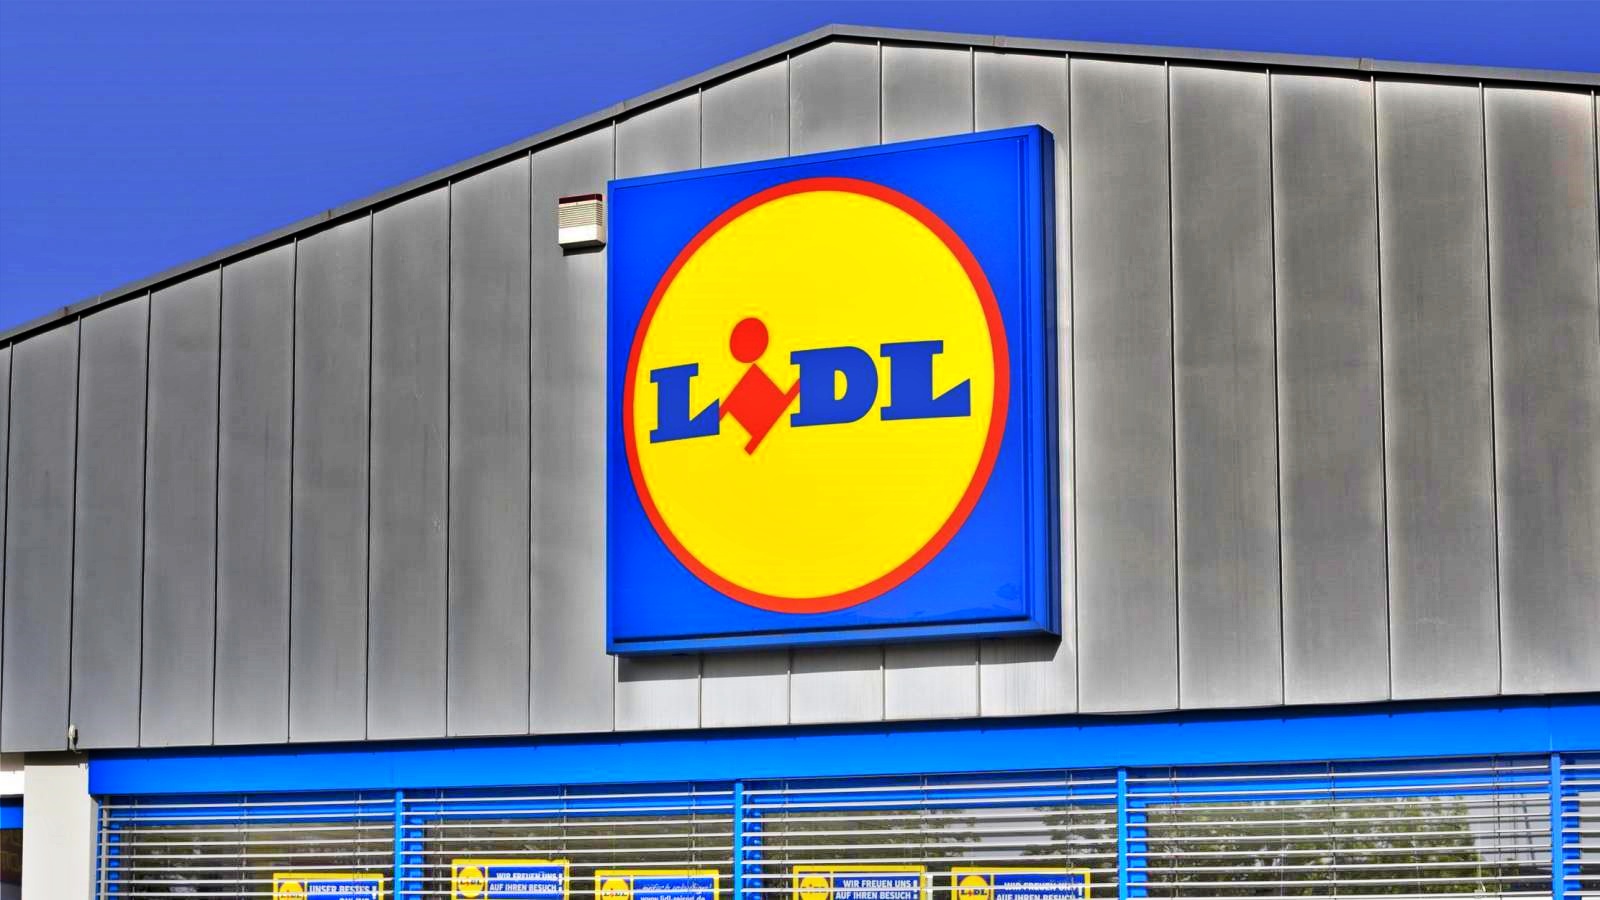 OFICJALNE ogłoszenie LIDL Rumunia Specjalne zmiany w sklepach